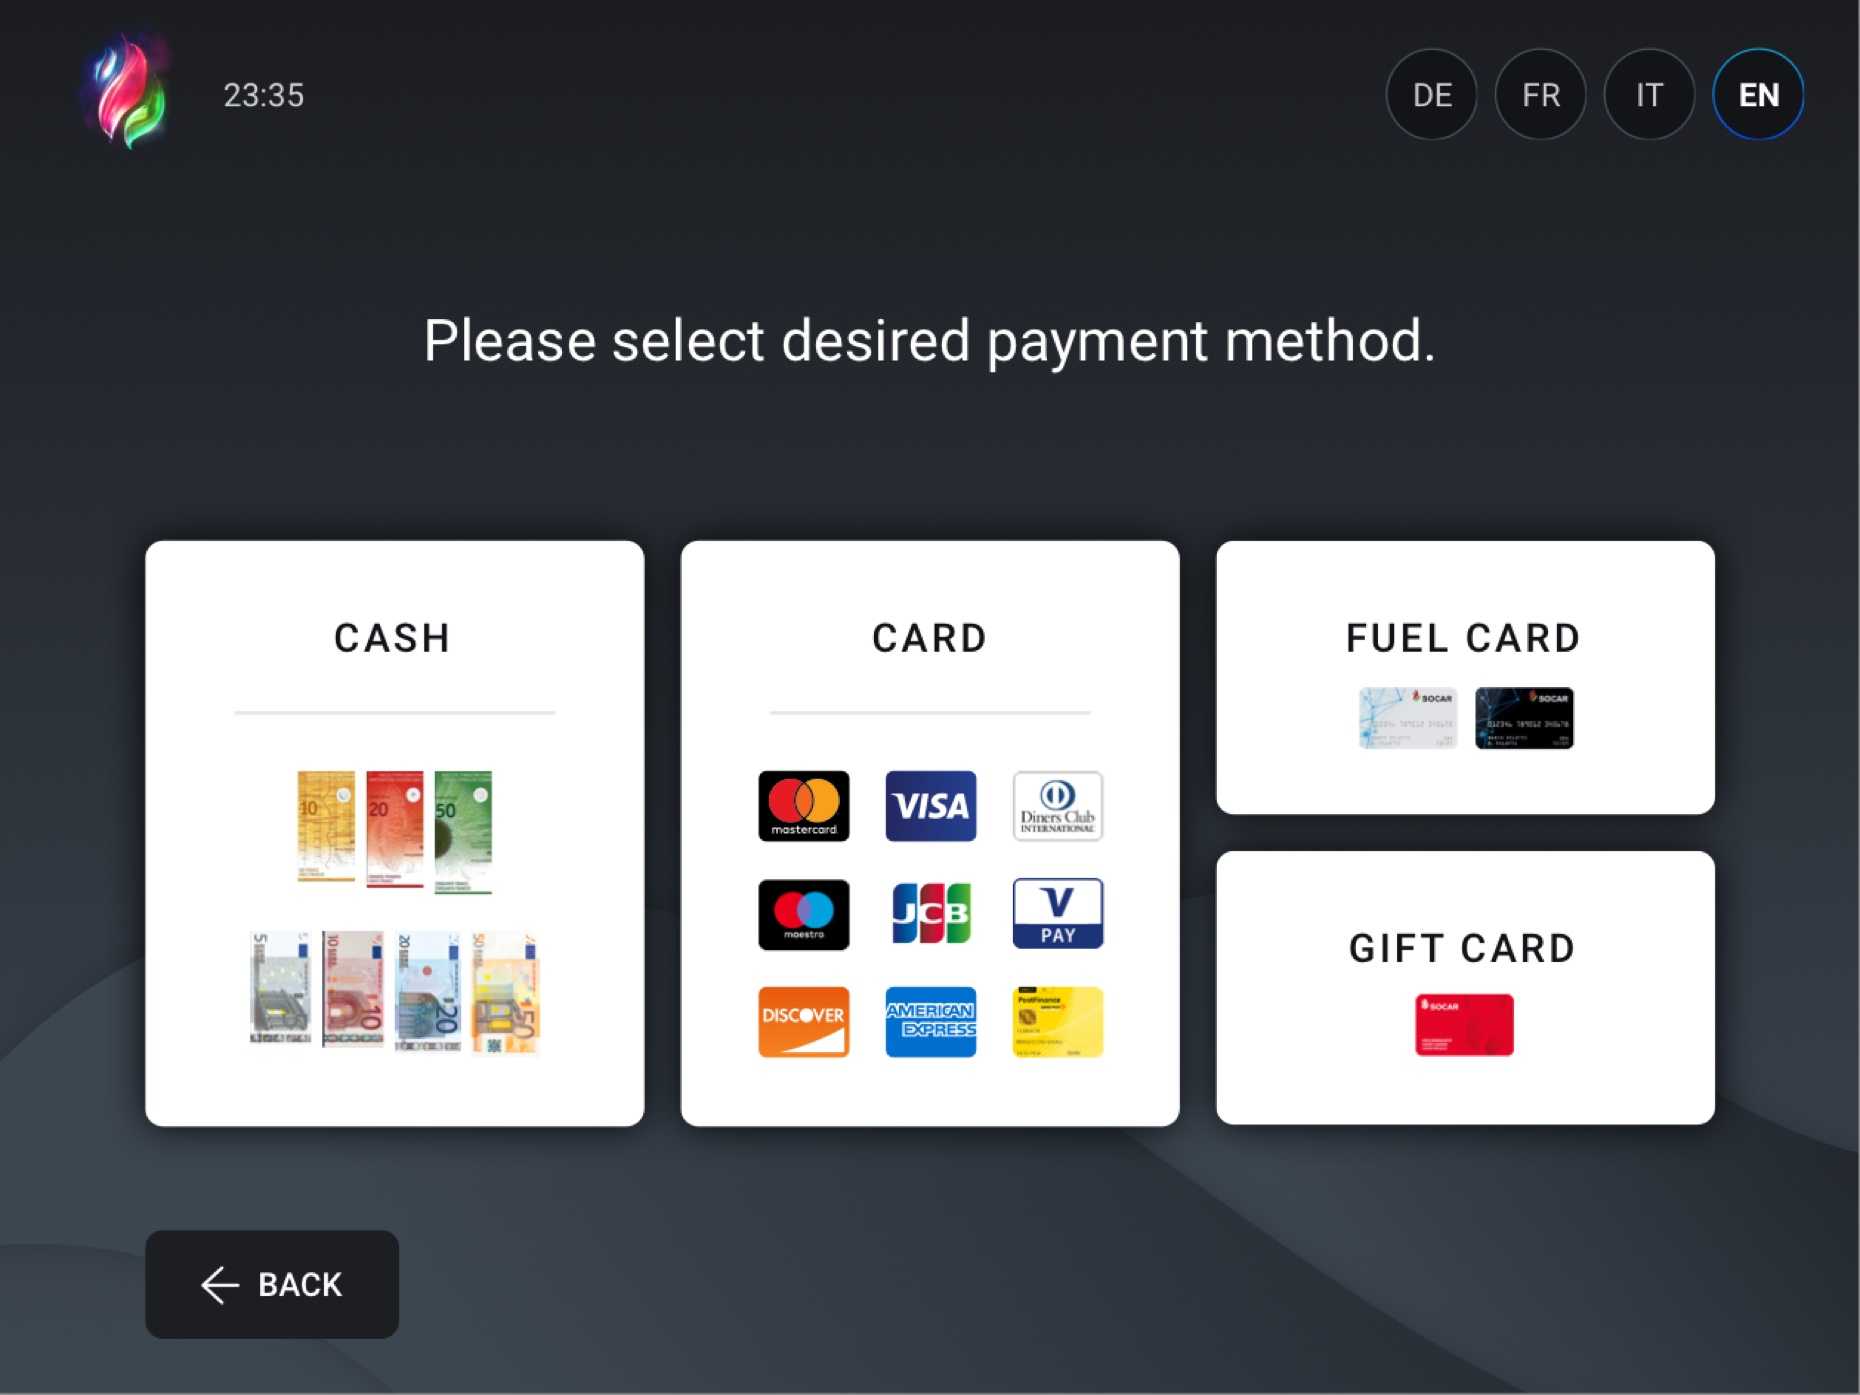 Design UI pour un système embarqué dans lequel les utilisateurs sélectionnent la méthode de paiement dans le cadre de l'expérience de self checkout